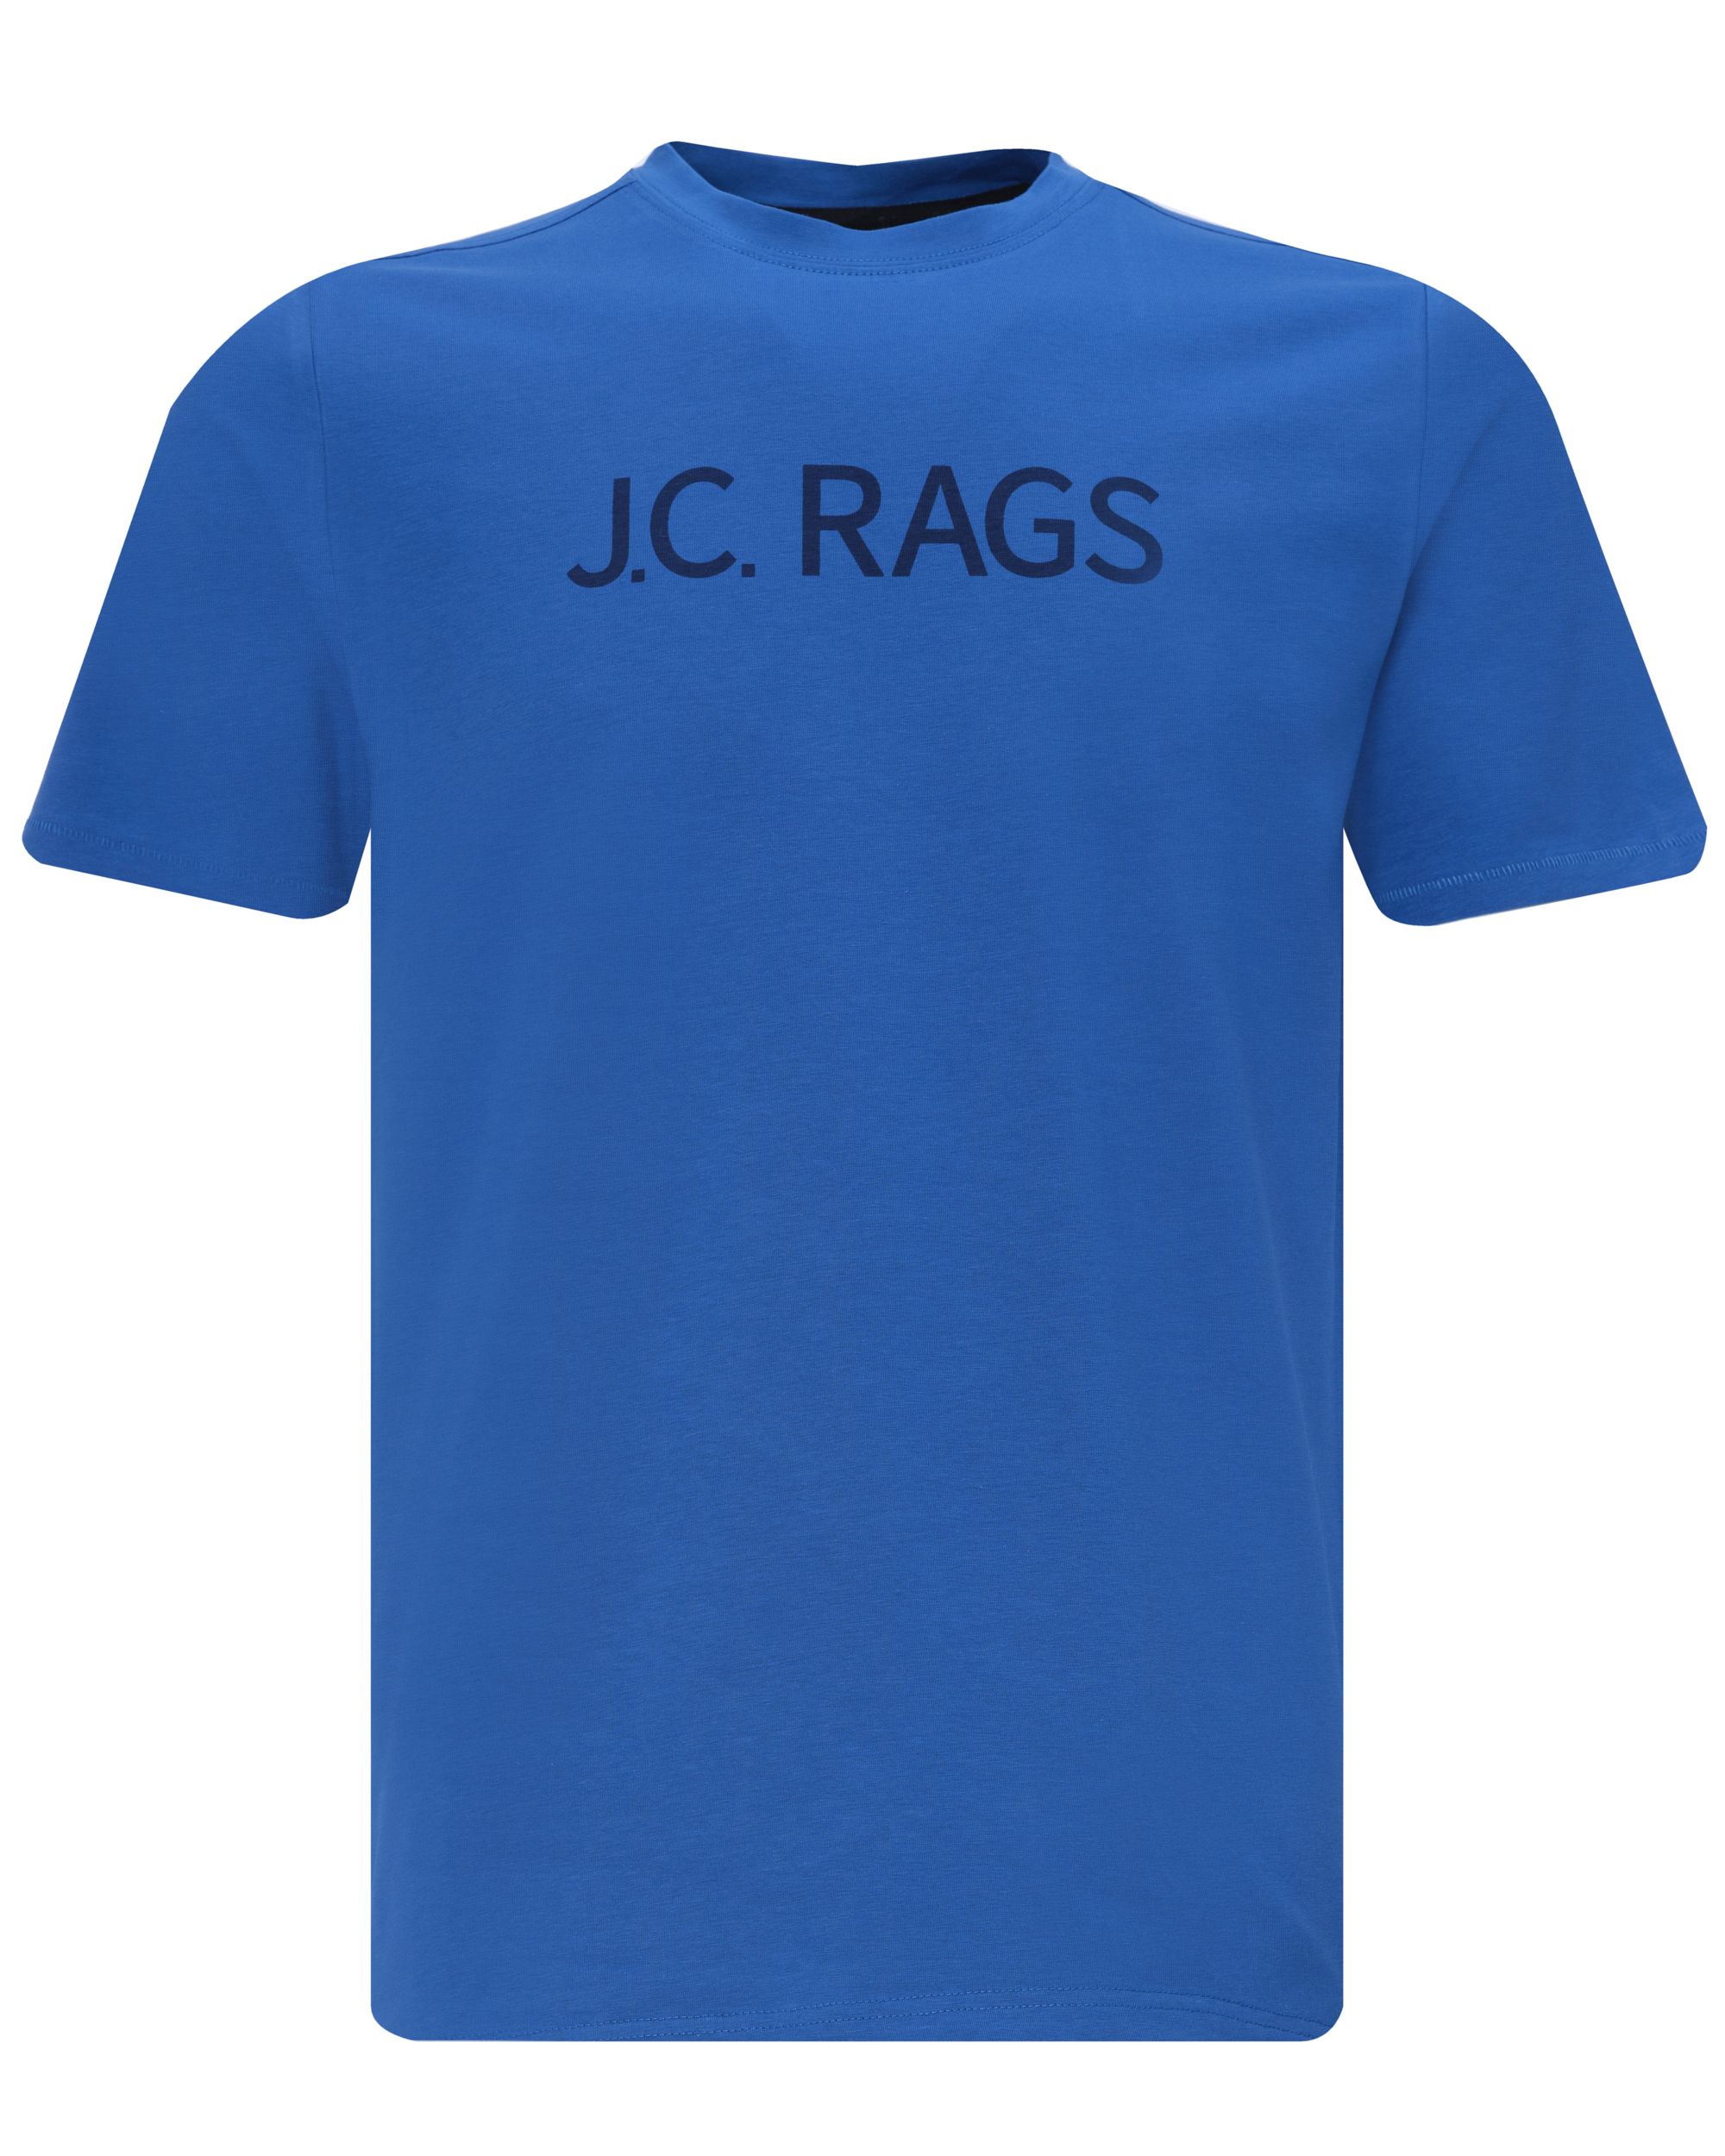 J.C. RAGS T-shirt KM Dark Blue 081505-002-L